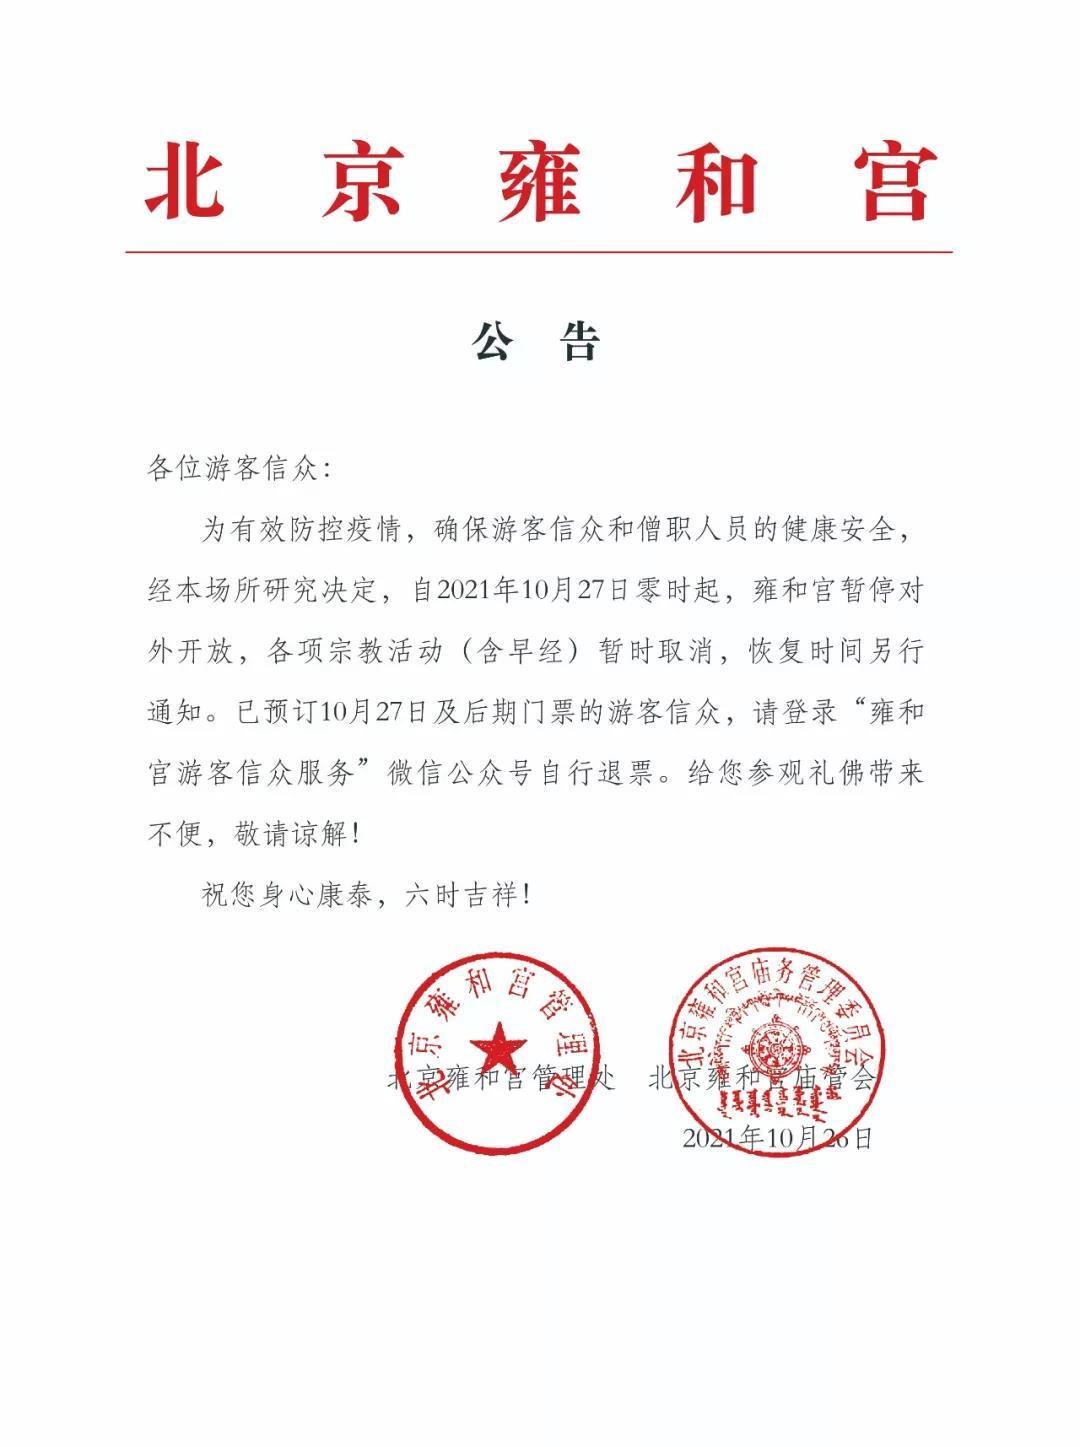 北京雍和宫于10月27日起暂停开放